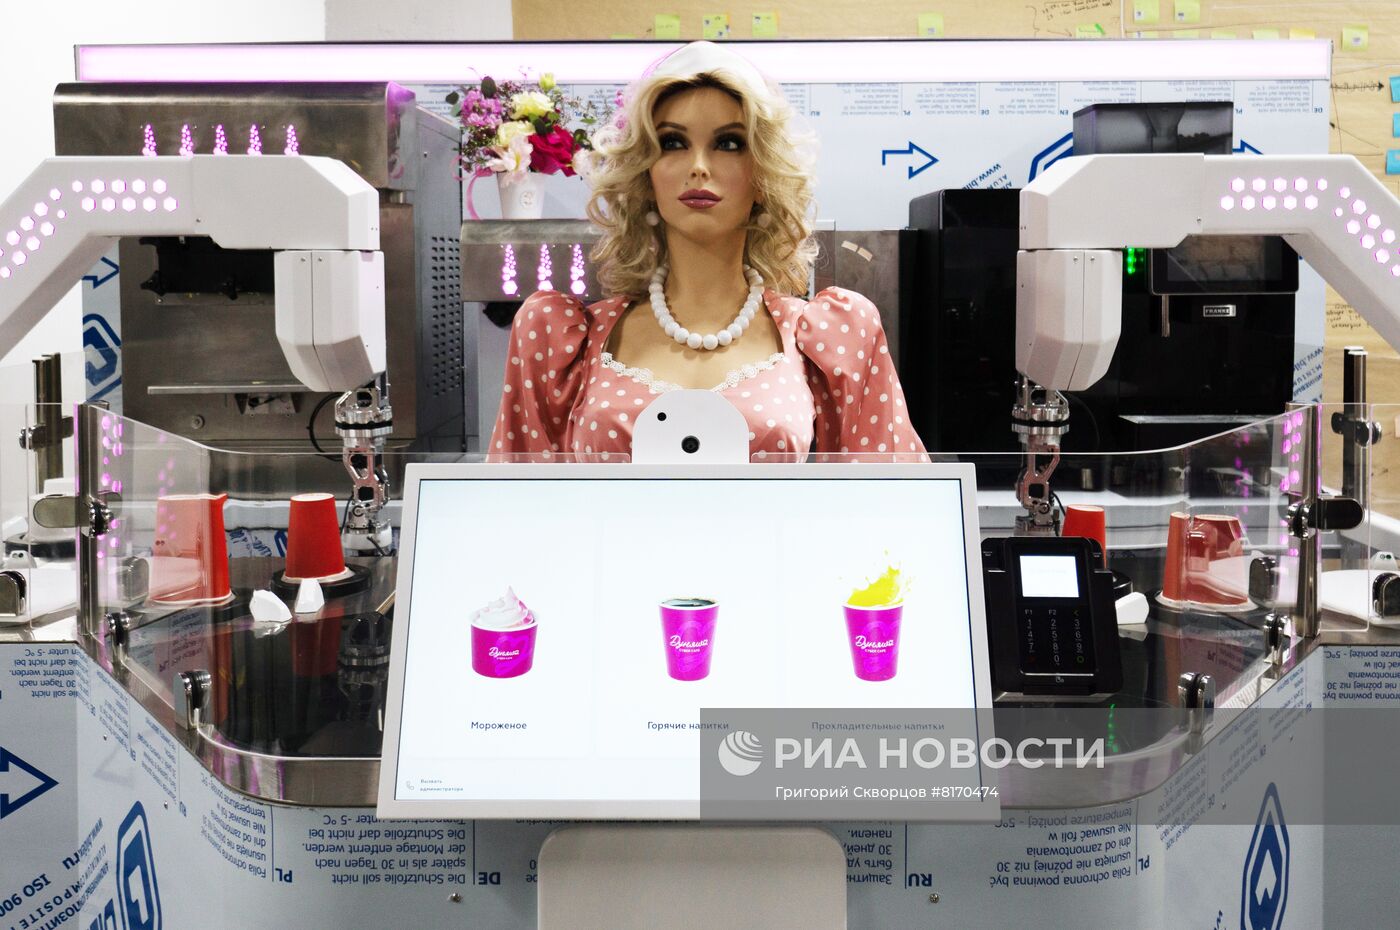 Роботизированное кафе в пермской компании "Промобот"